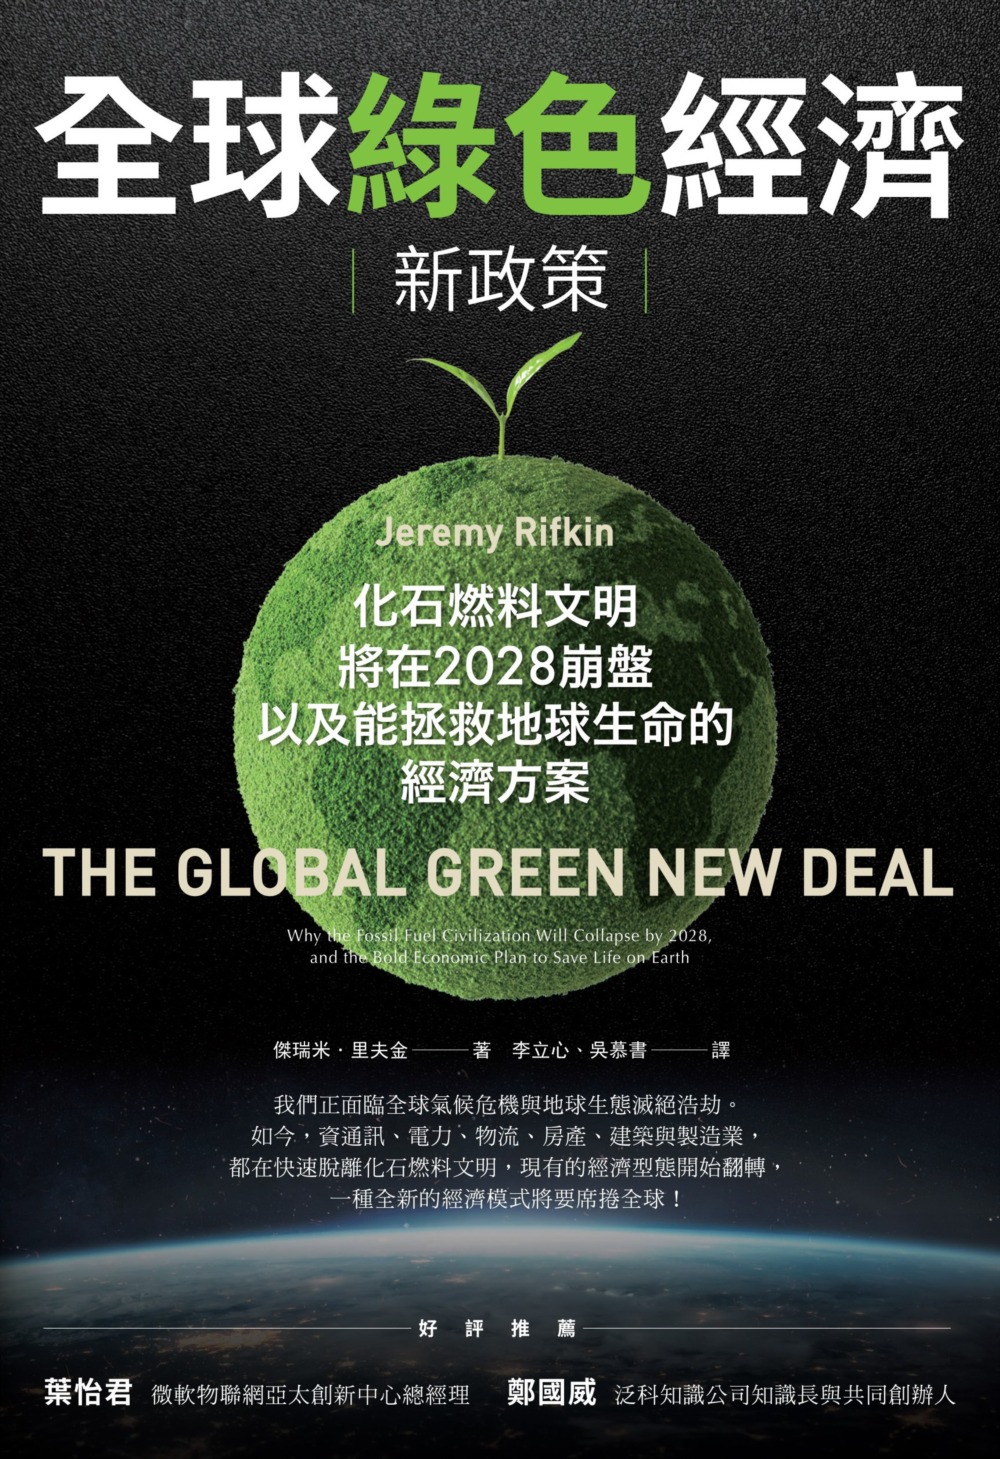 全球綠色經濟新政策：化石燃料文明將在2028崩盤，以及能拯救地球生命的經濟方案